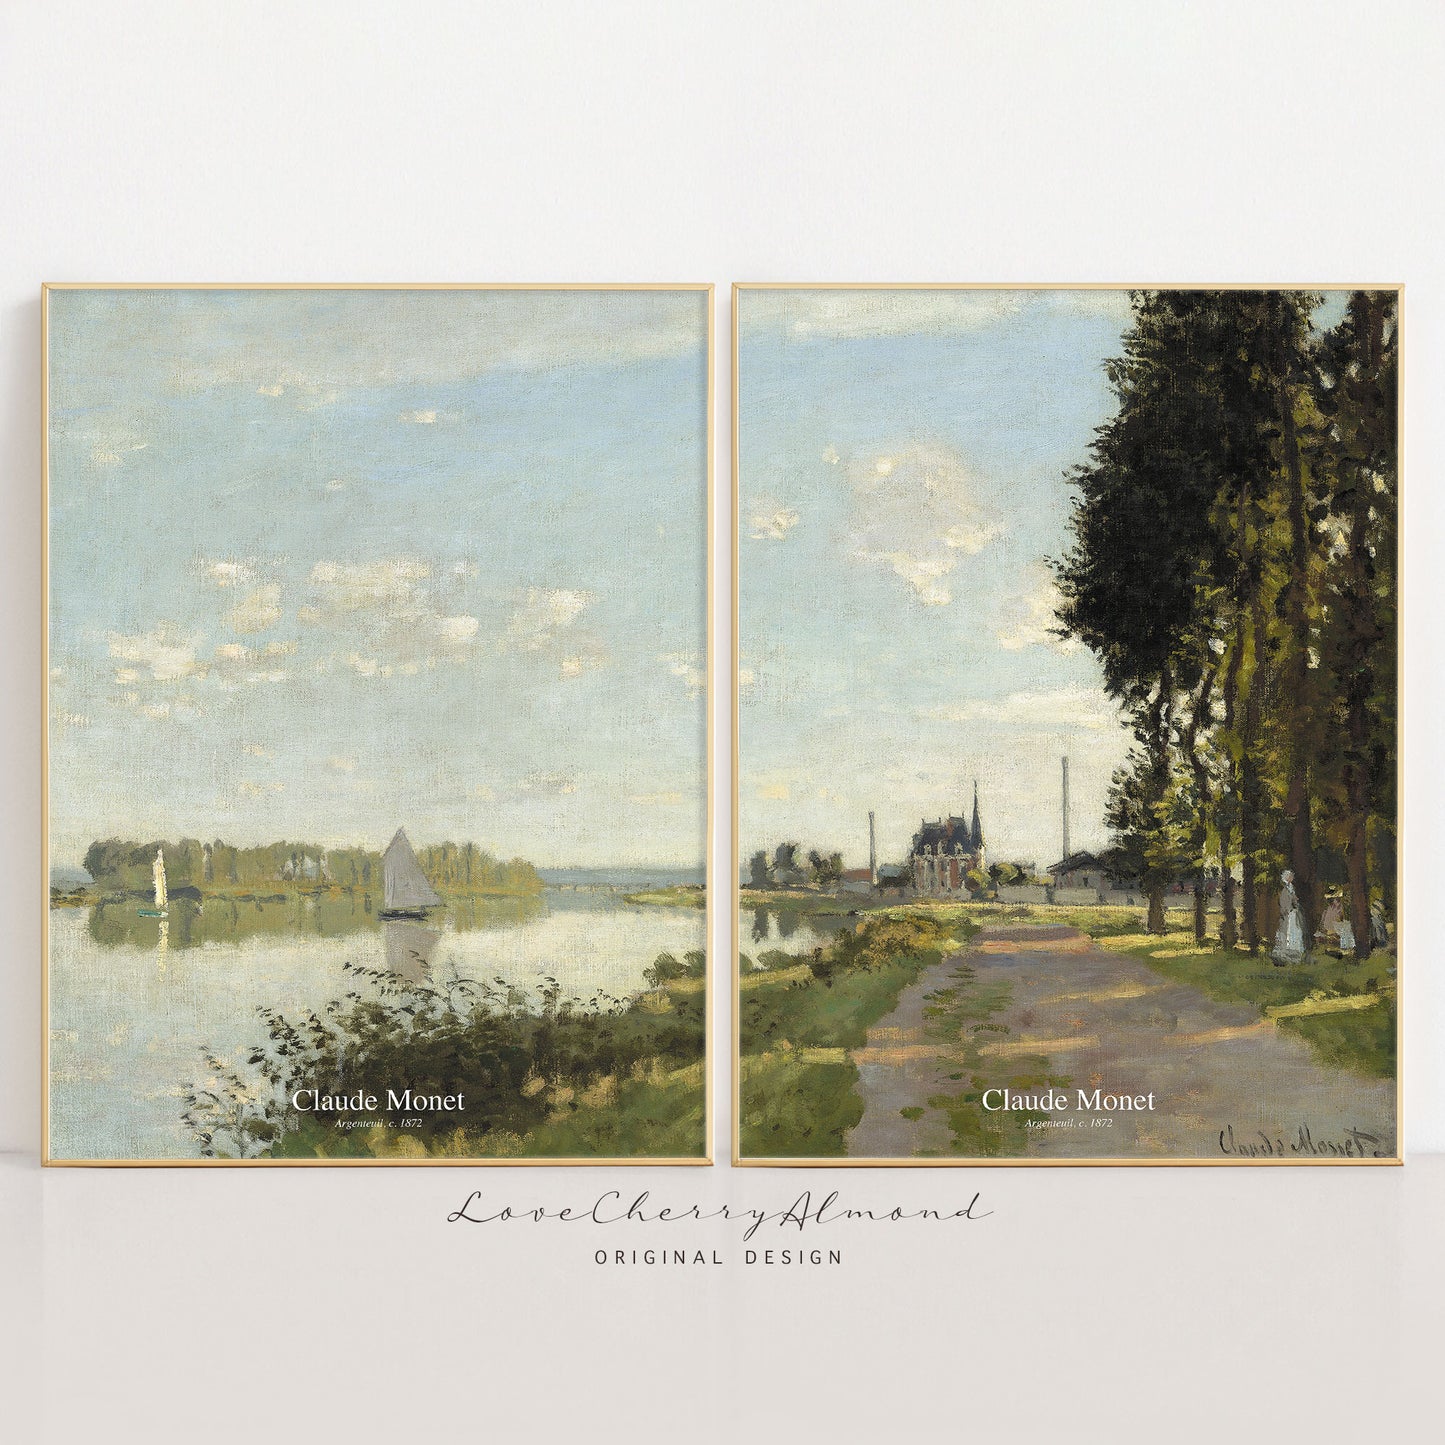 Argenteuil, 1872